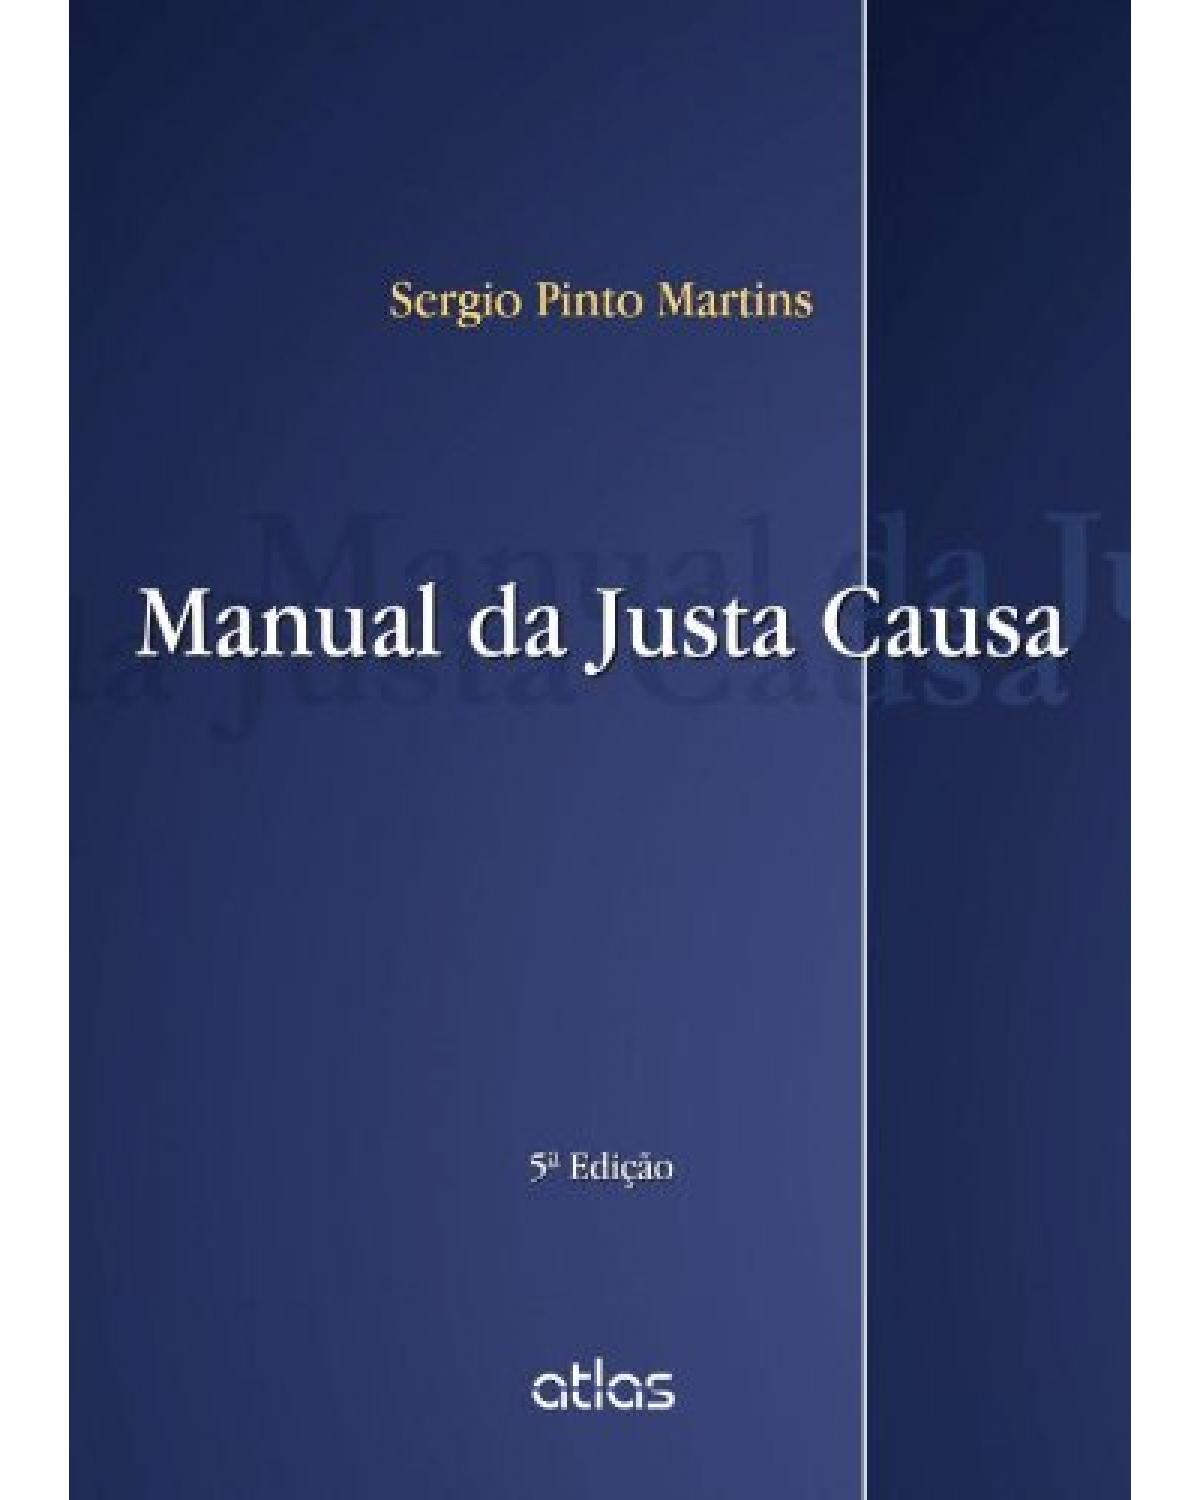 Manual da justa causa - 5ª Edição | 2013